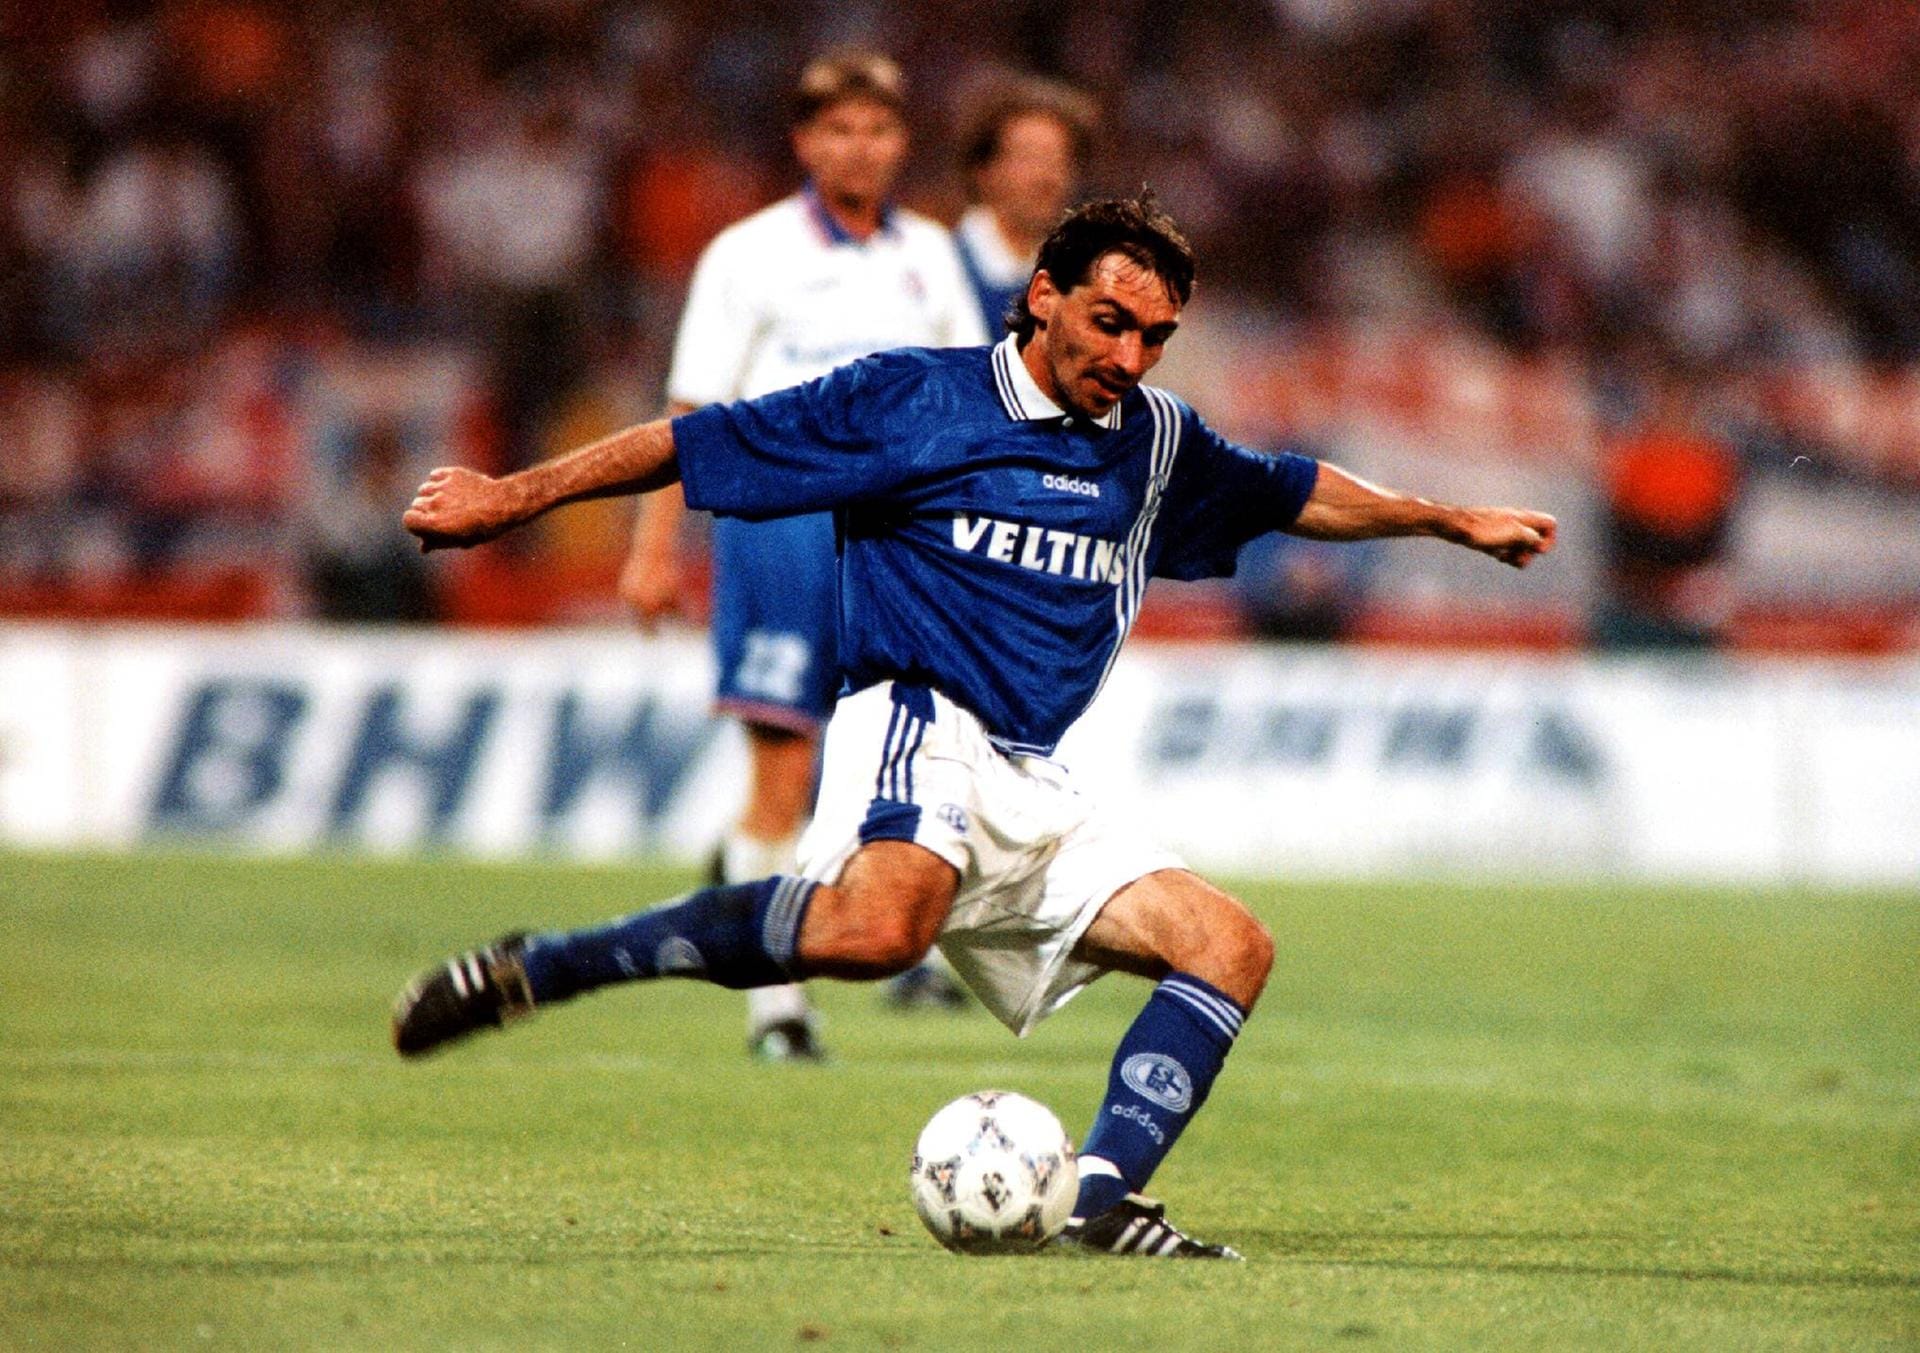 Auch Jiri Nemec war einer dieser Malocher, die einfach zum FC Schalke passten. Von 1993 bis 2002 ackerte der langjährige tschechische Nationalspieler im Mittelfeld der Königsblauen, war bei allen Höhenflügen von Uefa-Cup-Sieg bis Vizemeisterschaft und DFB-Pokal-Erfolgen dabei. Nach dem Karriereende 2006 versuchte sich Nemec auch als Trainer, war zuletzt bis Juni 2019 in seiner Heimat beim Drittligisten Sokol Brozany angestellt.